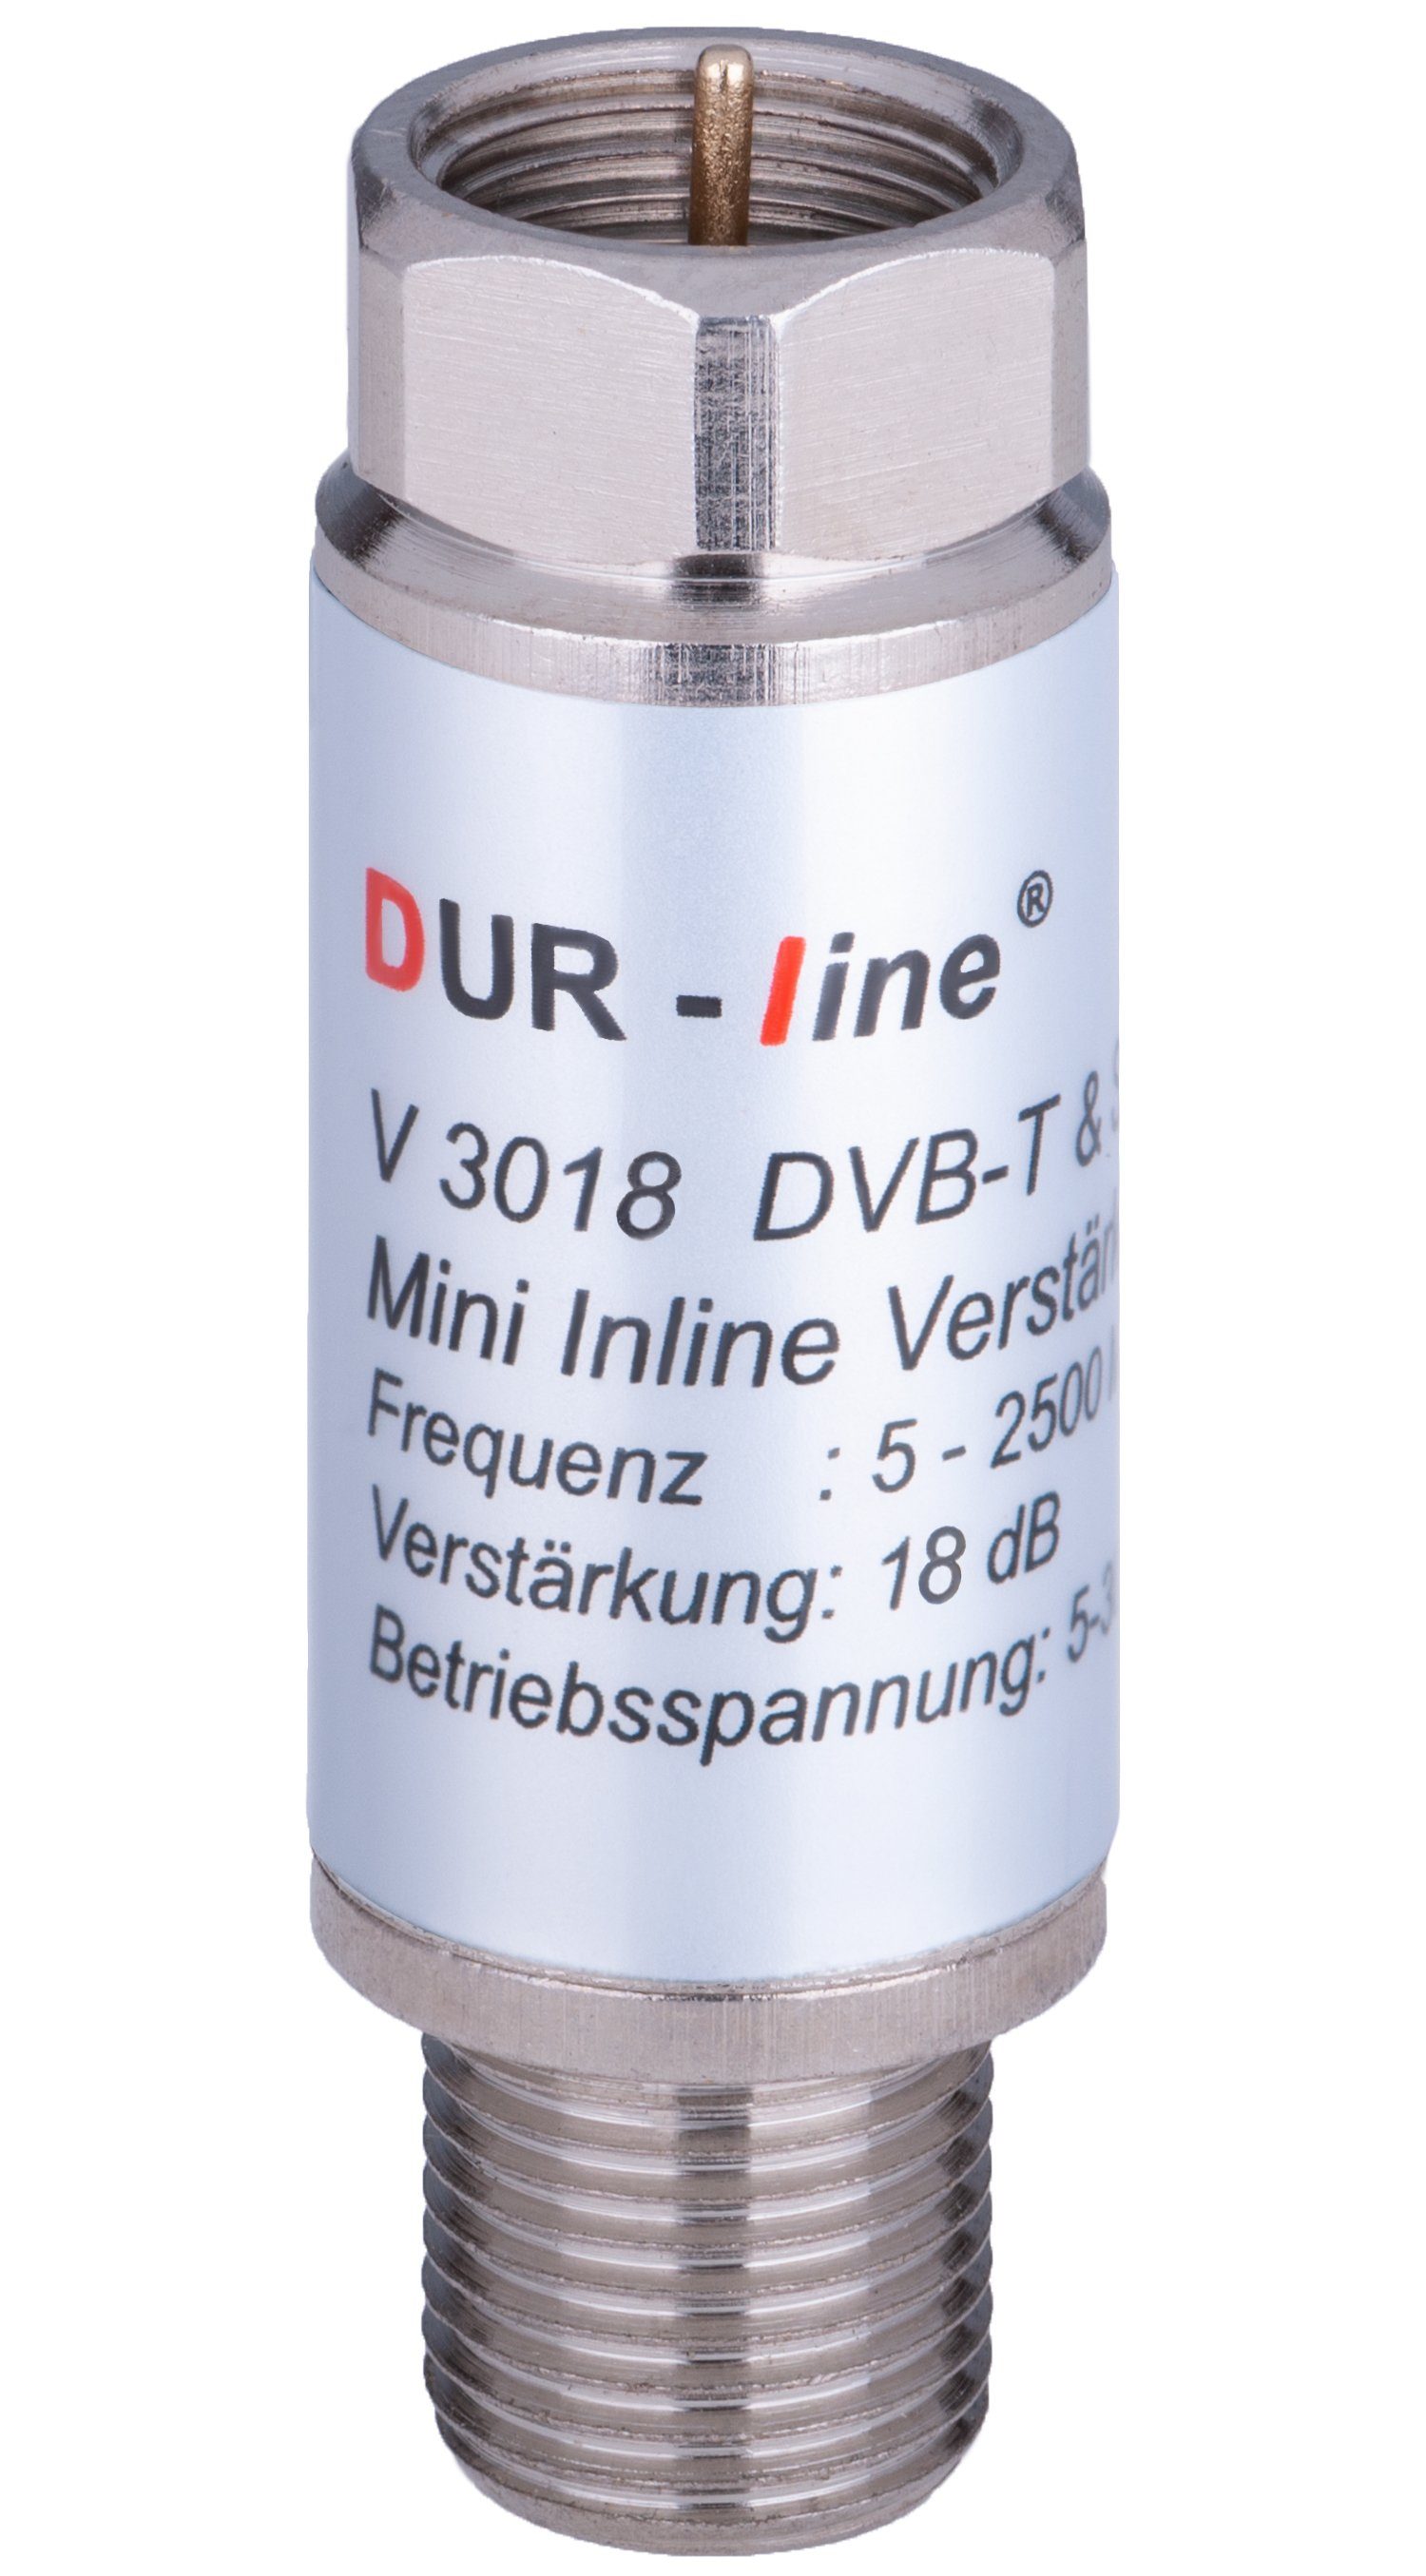 V 3018 Inline-Verstärker Dur-Line SAT-Kabel dB 18 DUR-line Mini